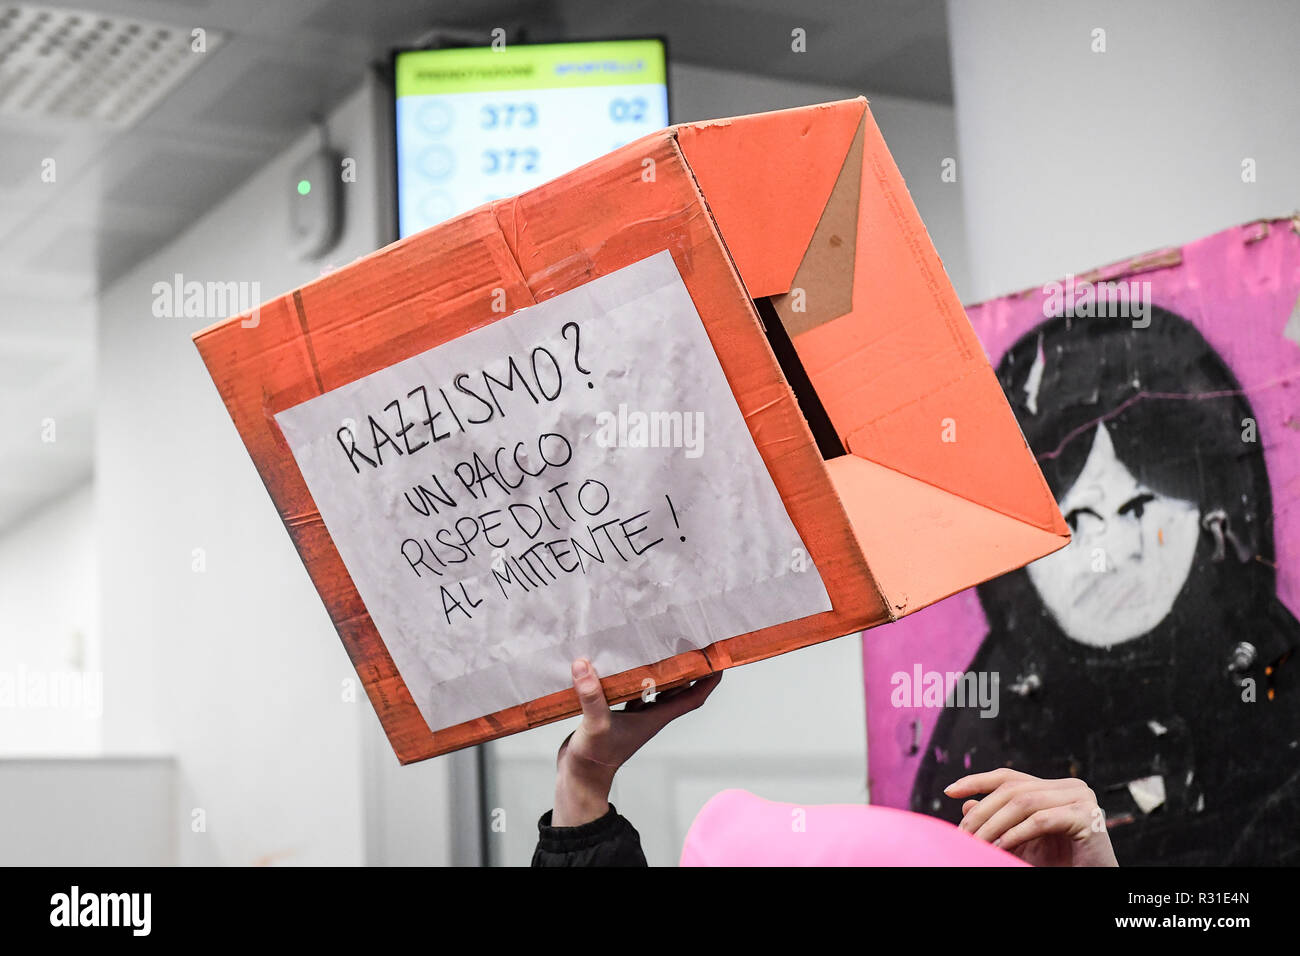 Foto LaPresse - Claudio Furlan 21/11/2018 Milano ( Mi ) Cronaca Protesta del movimento femminista Non una di Meno presso l'ufficio postale di corso di porta ticinese dove una signora &#xe8; stata respinta perch&#xe8; portava il velo Stock Photo